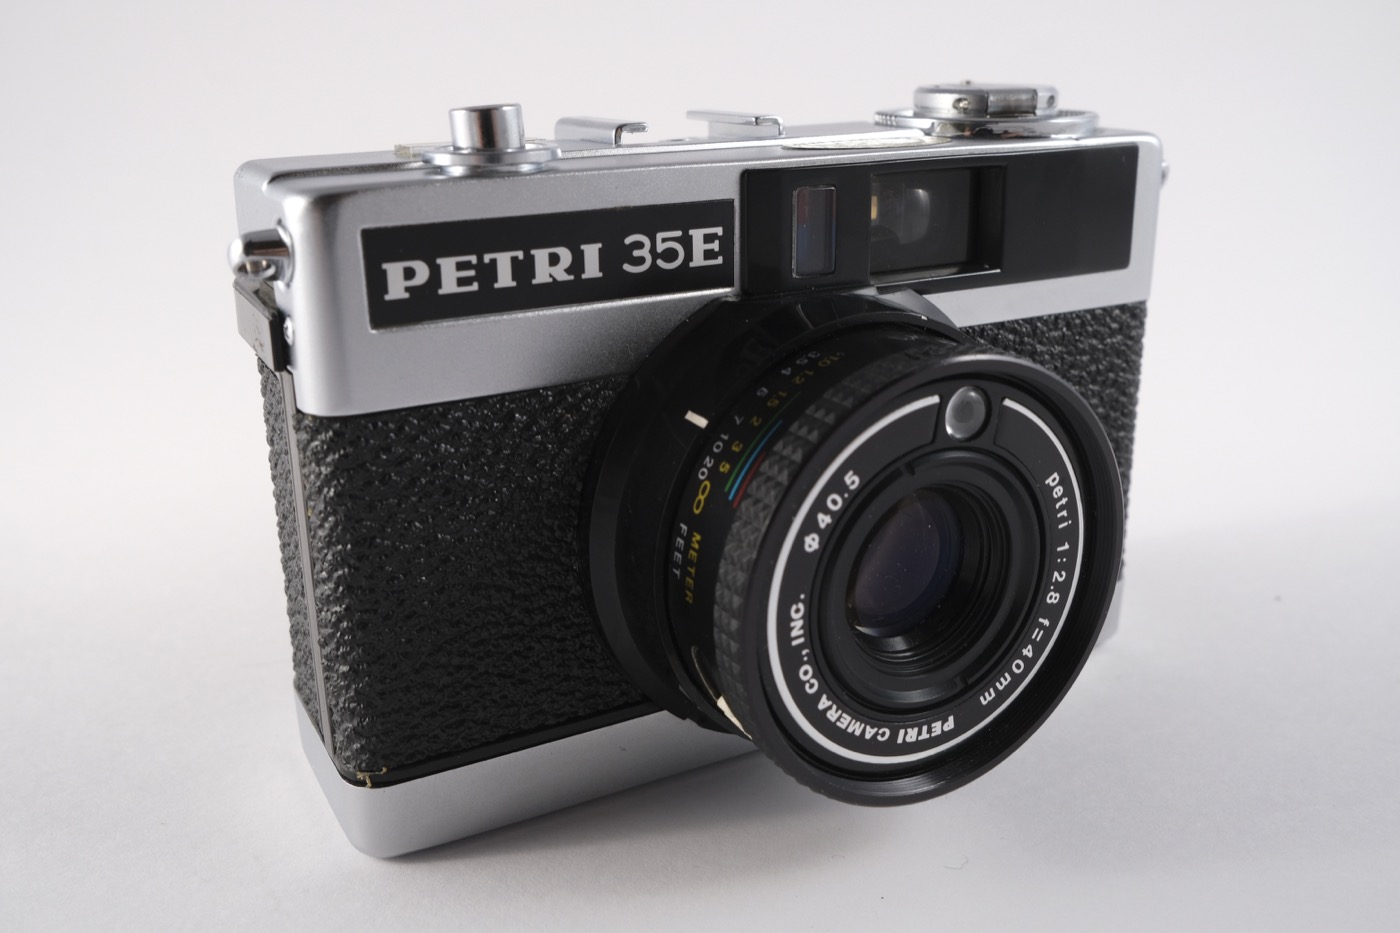 Petri 35E camera